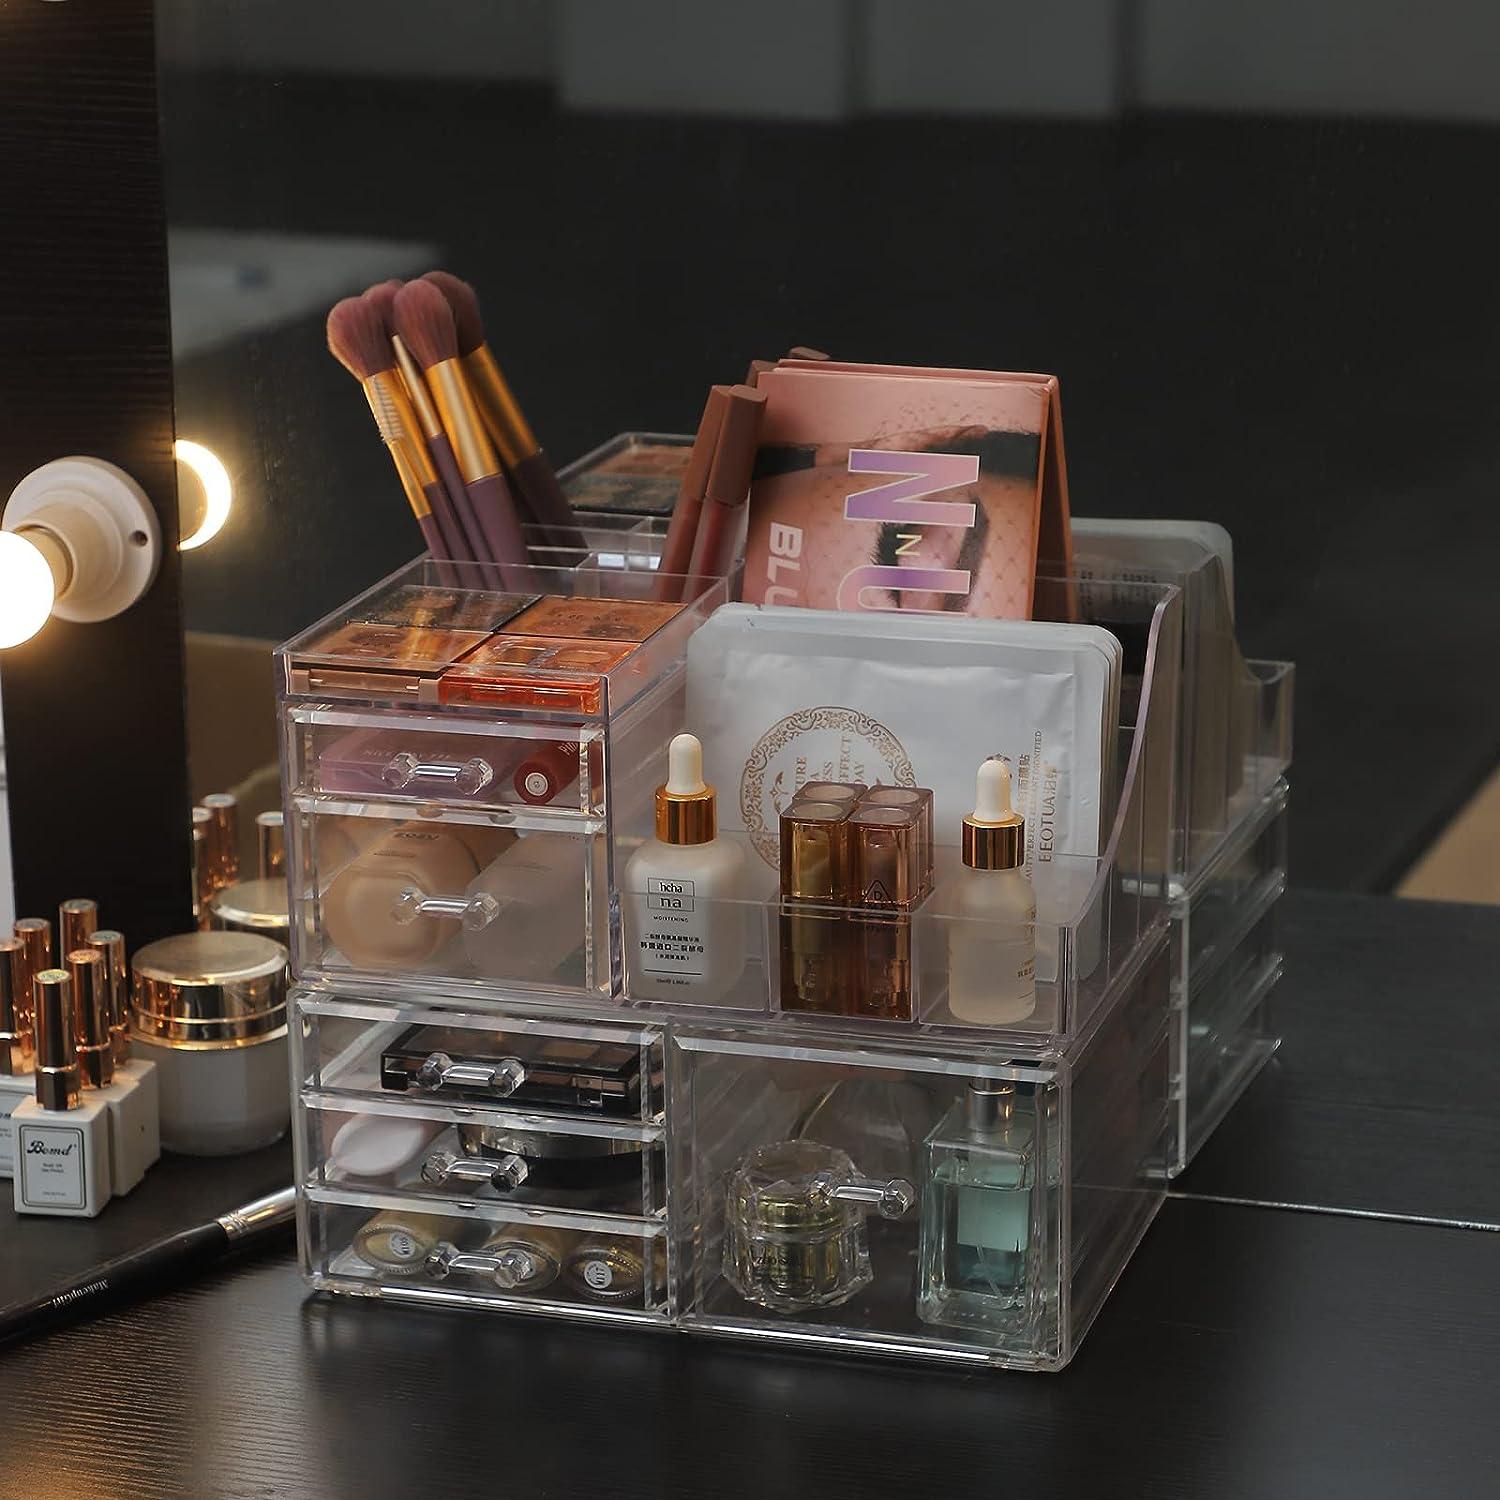 Organizador de maquillaje transparente y almacenamiento para tocador, grandes - VIRTUAL MUEBLES